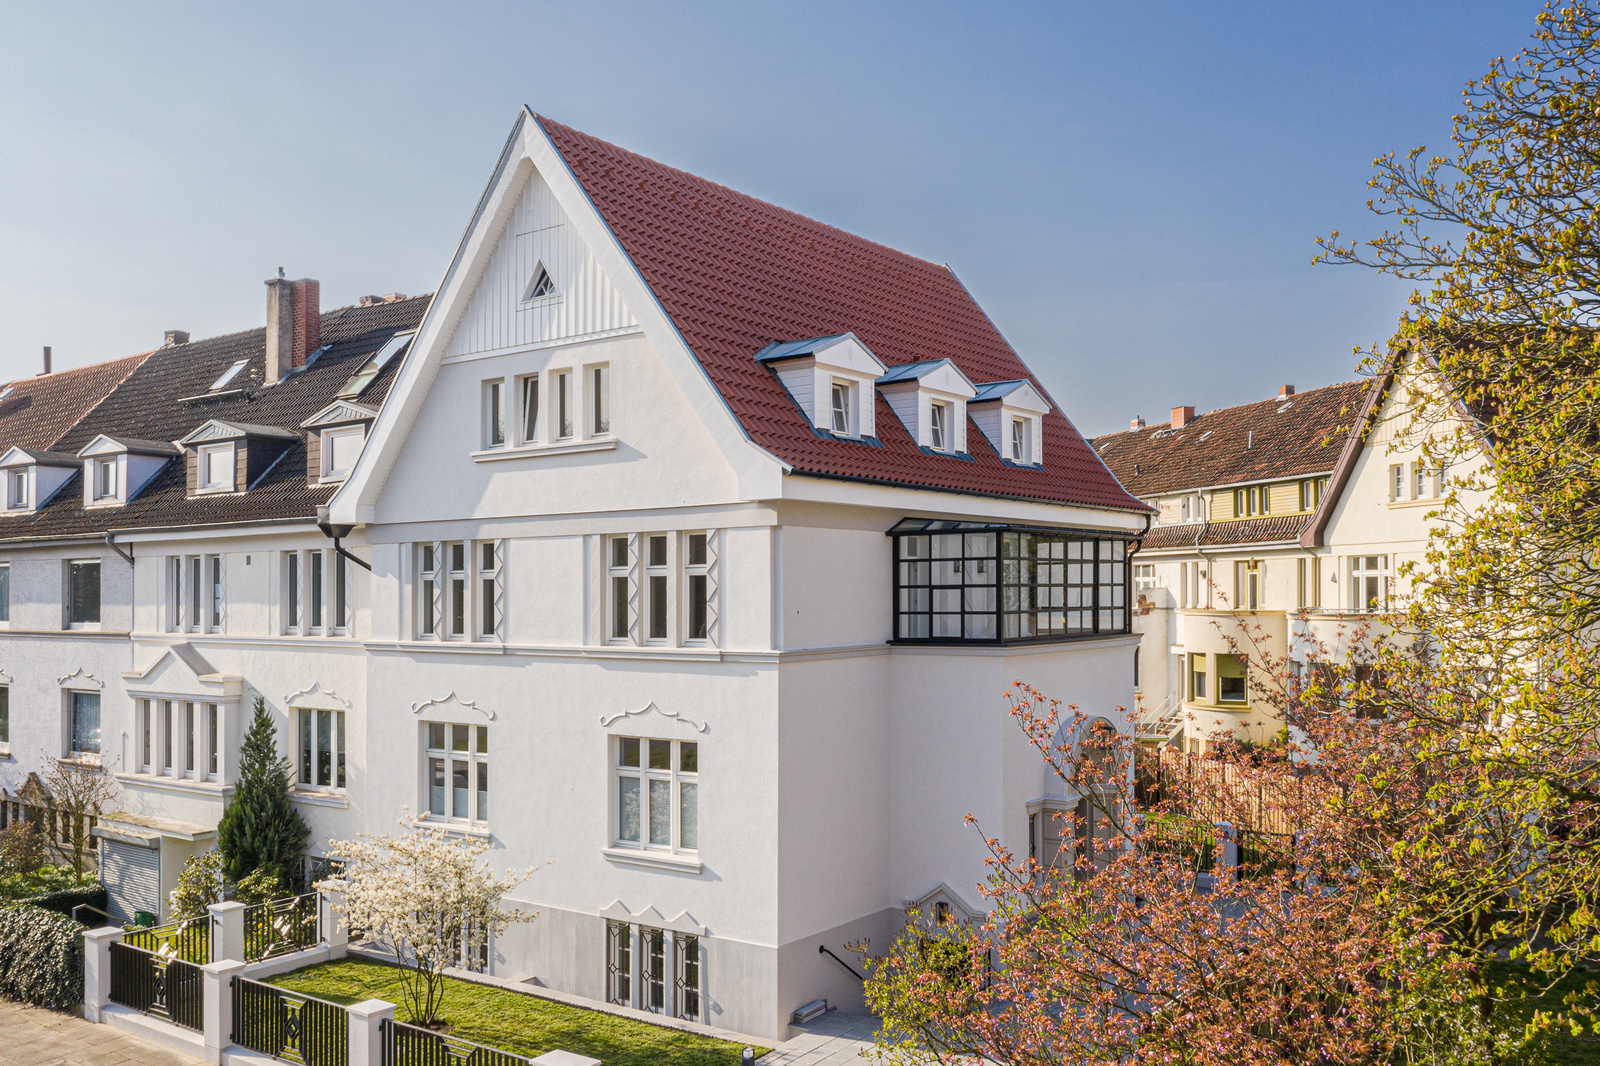 vermietet: Kernsanierte Altbauwohnung mit herausragender Ausstattung Wintergarten, EBK, Balkon etc.